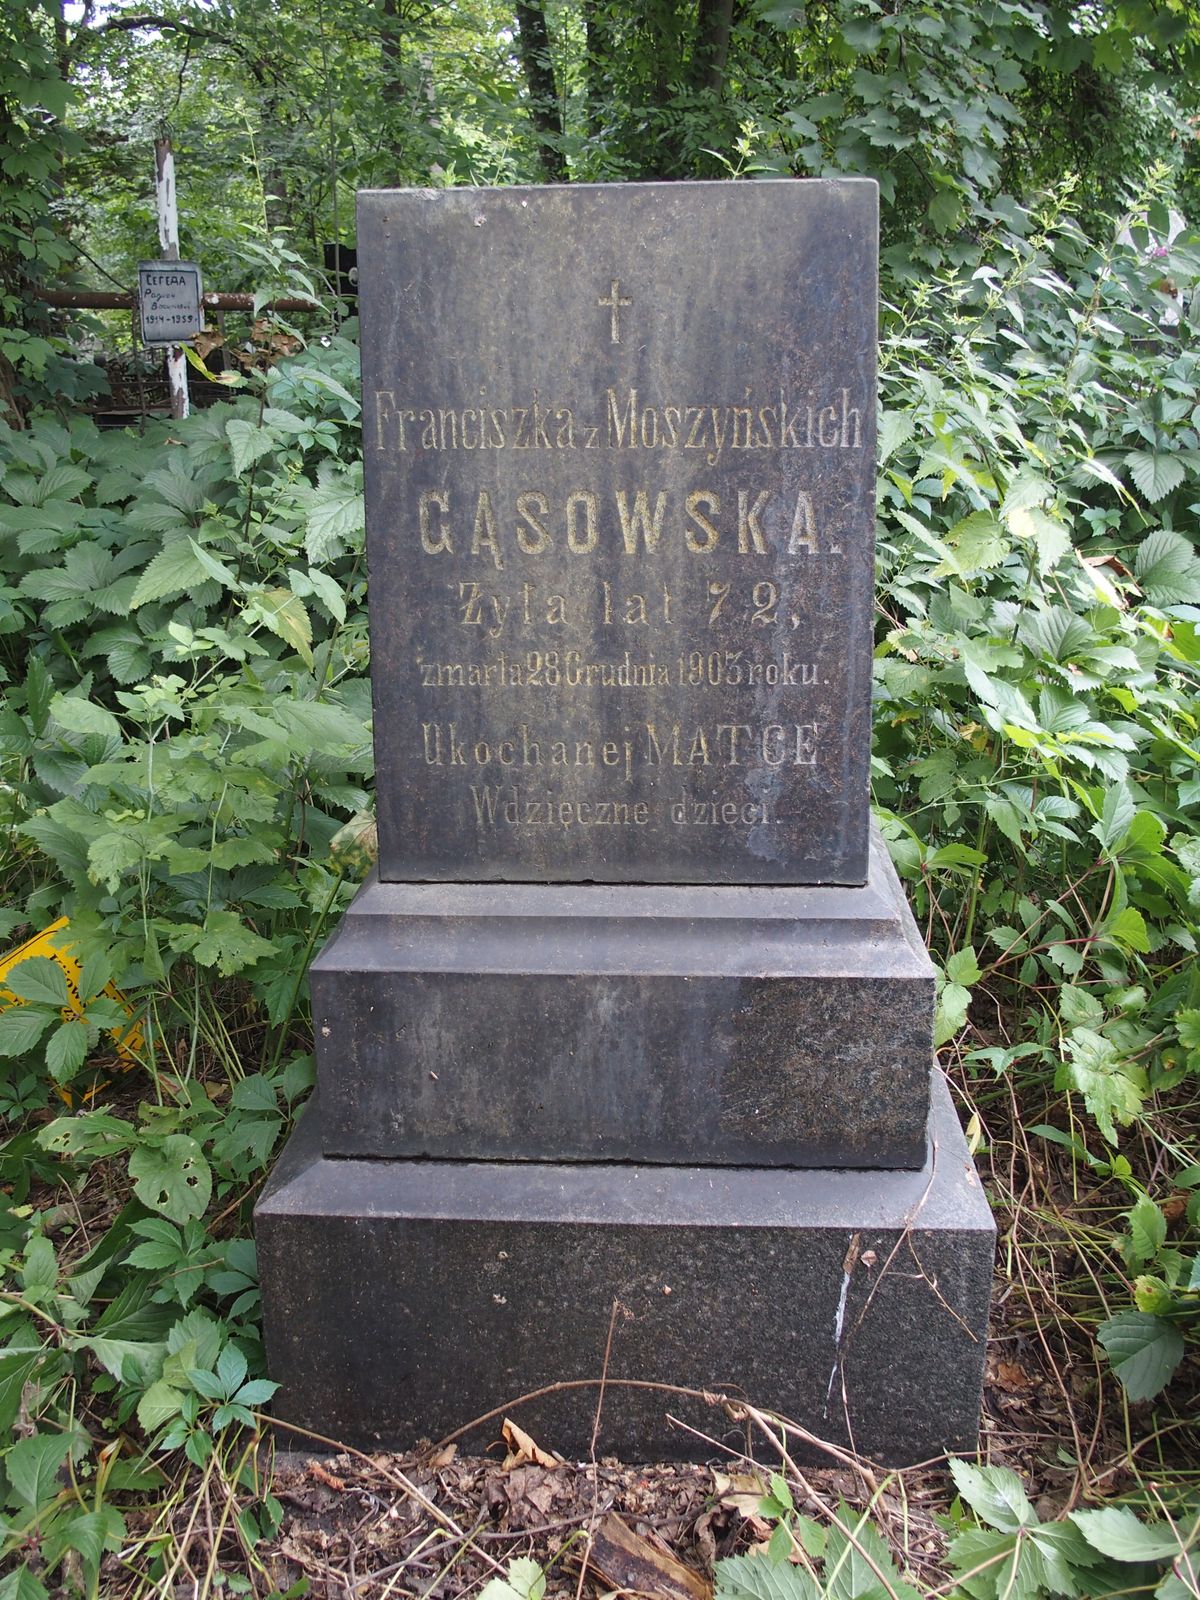 Tombstone of Franciszka Gąsowska